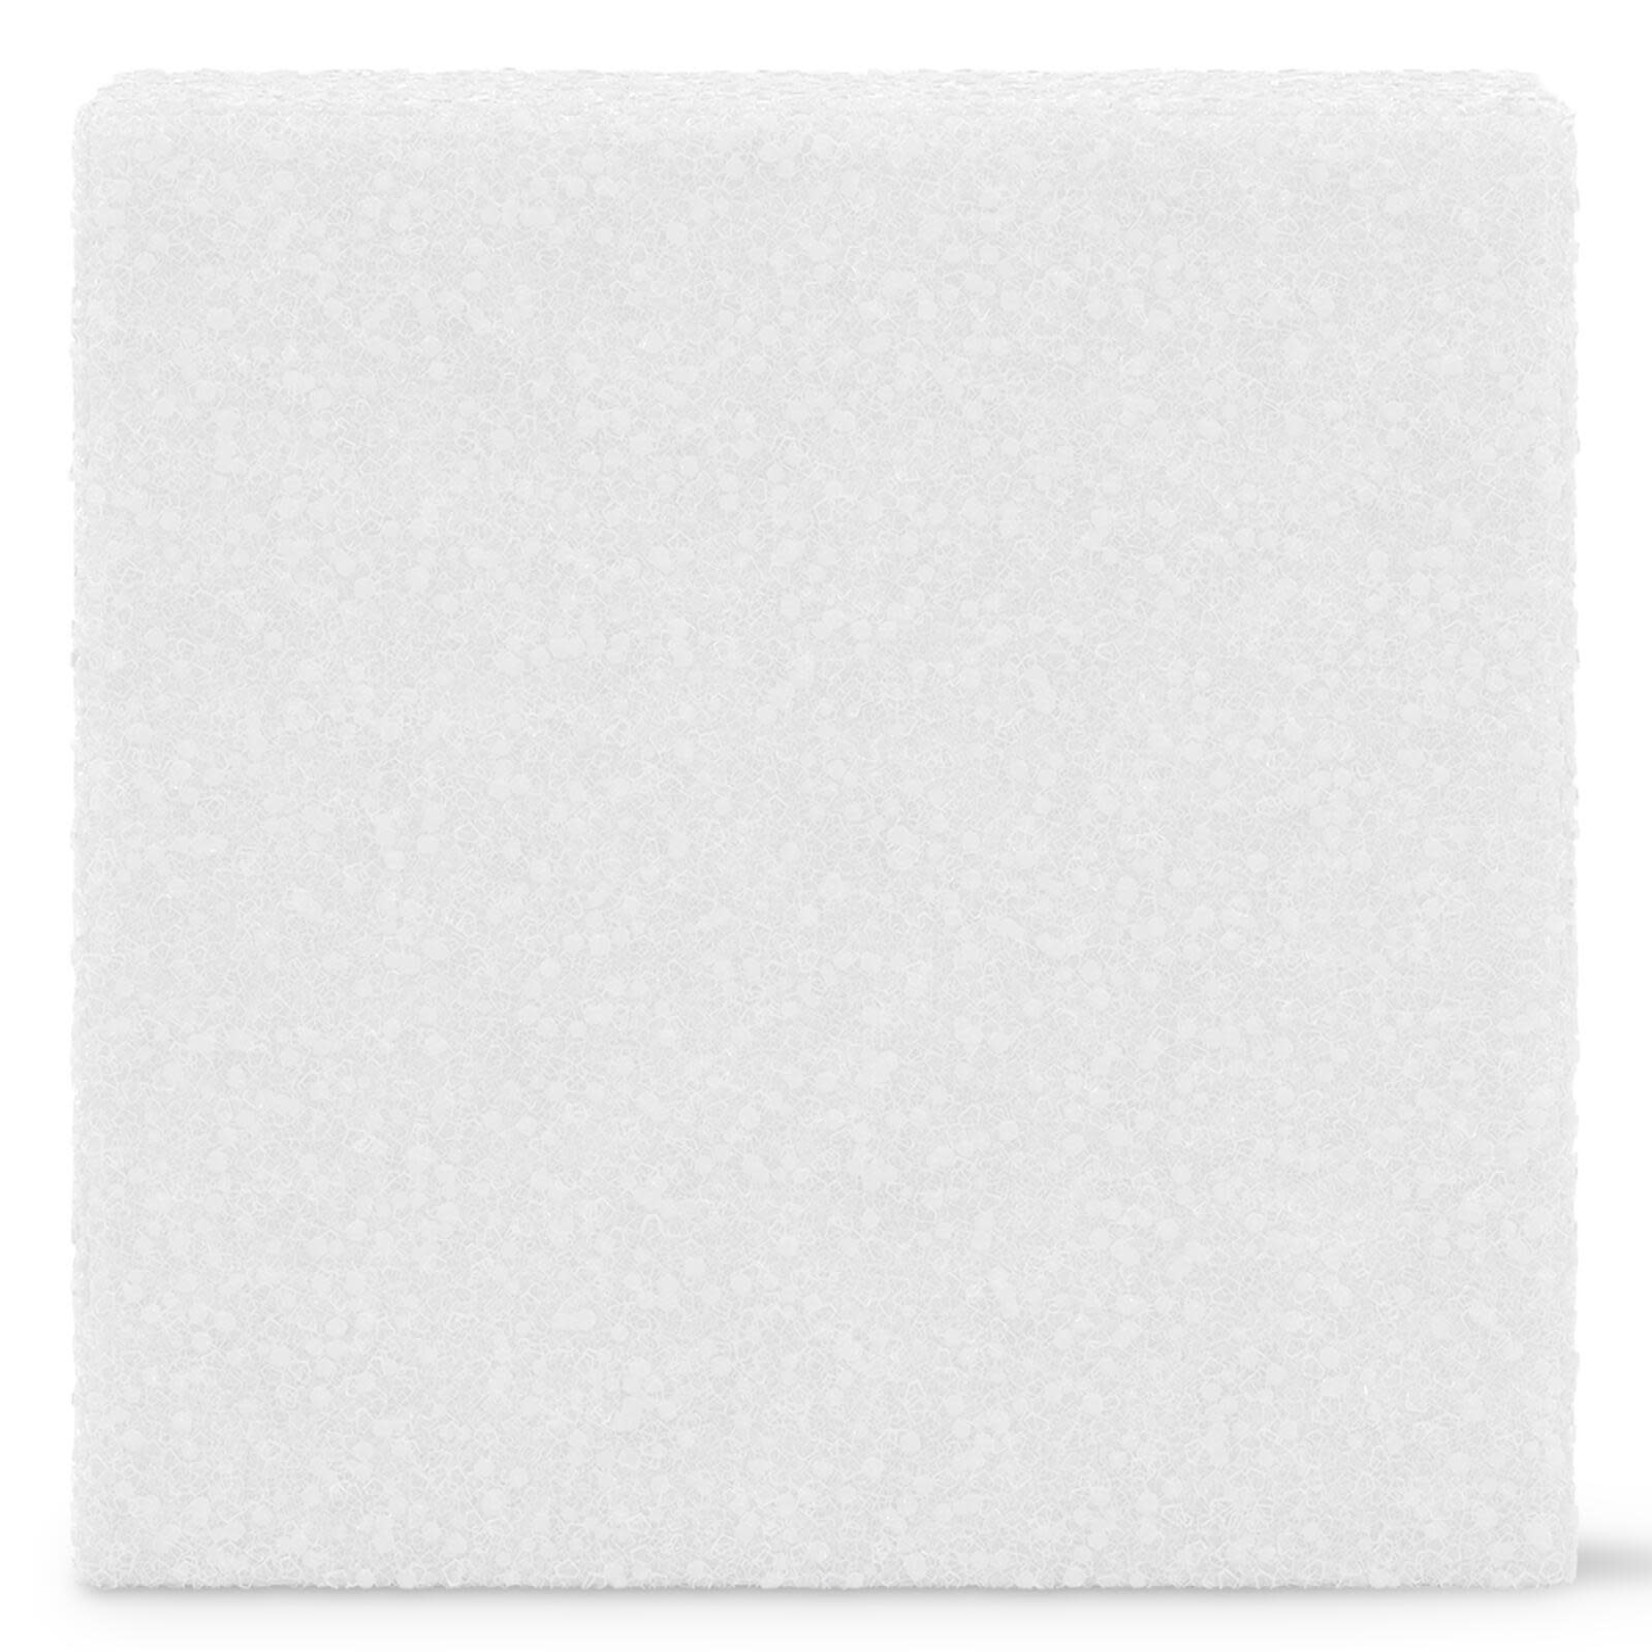 5" x 5" x 5" STYROFOAM Cube - White